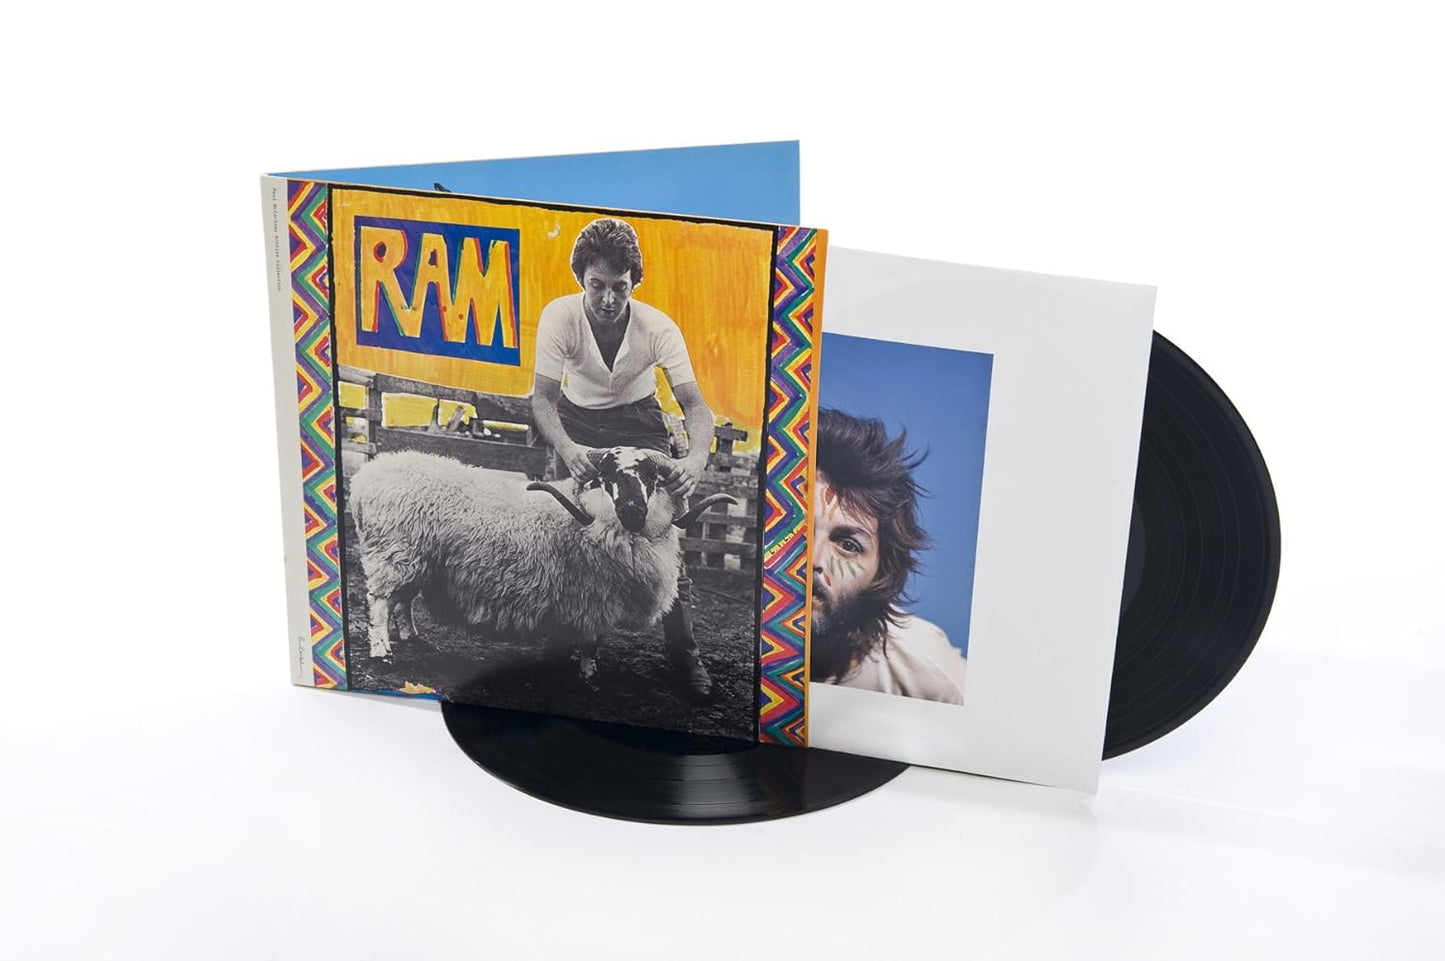 Paul Mccartney & Wings - Ram (2 LP)